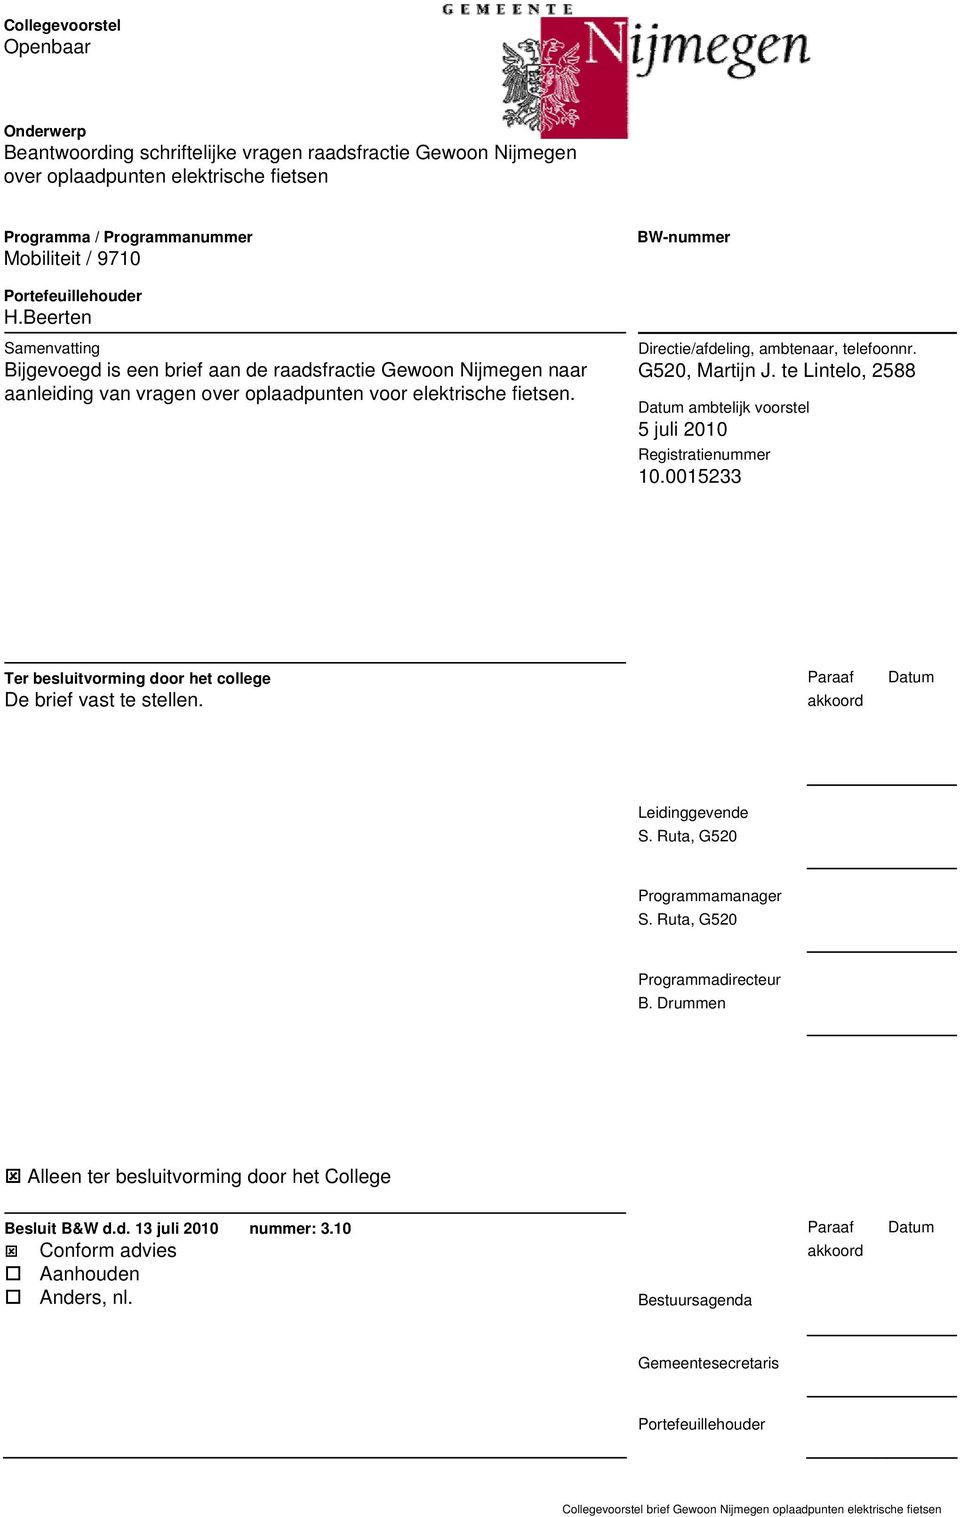 Directie/afdeling, ambtenaar, telefoonnr. G520, Martijn J. te Lintelo, 2588 Datum ambtelijk voorstel 5 juli 2010 Registratienummer 10.